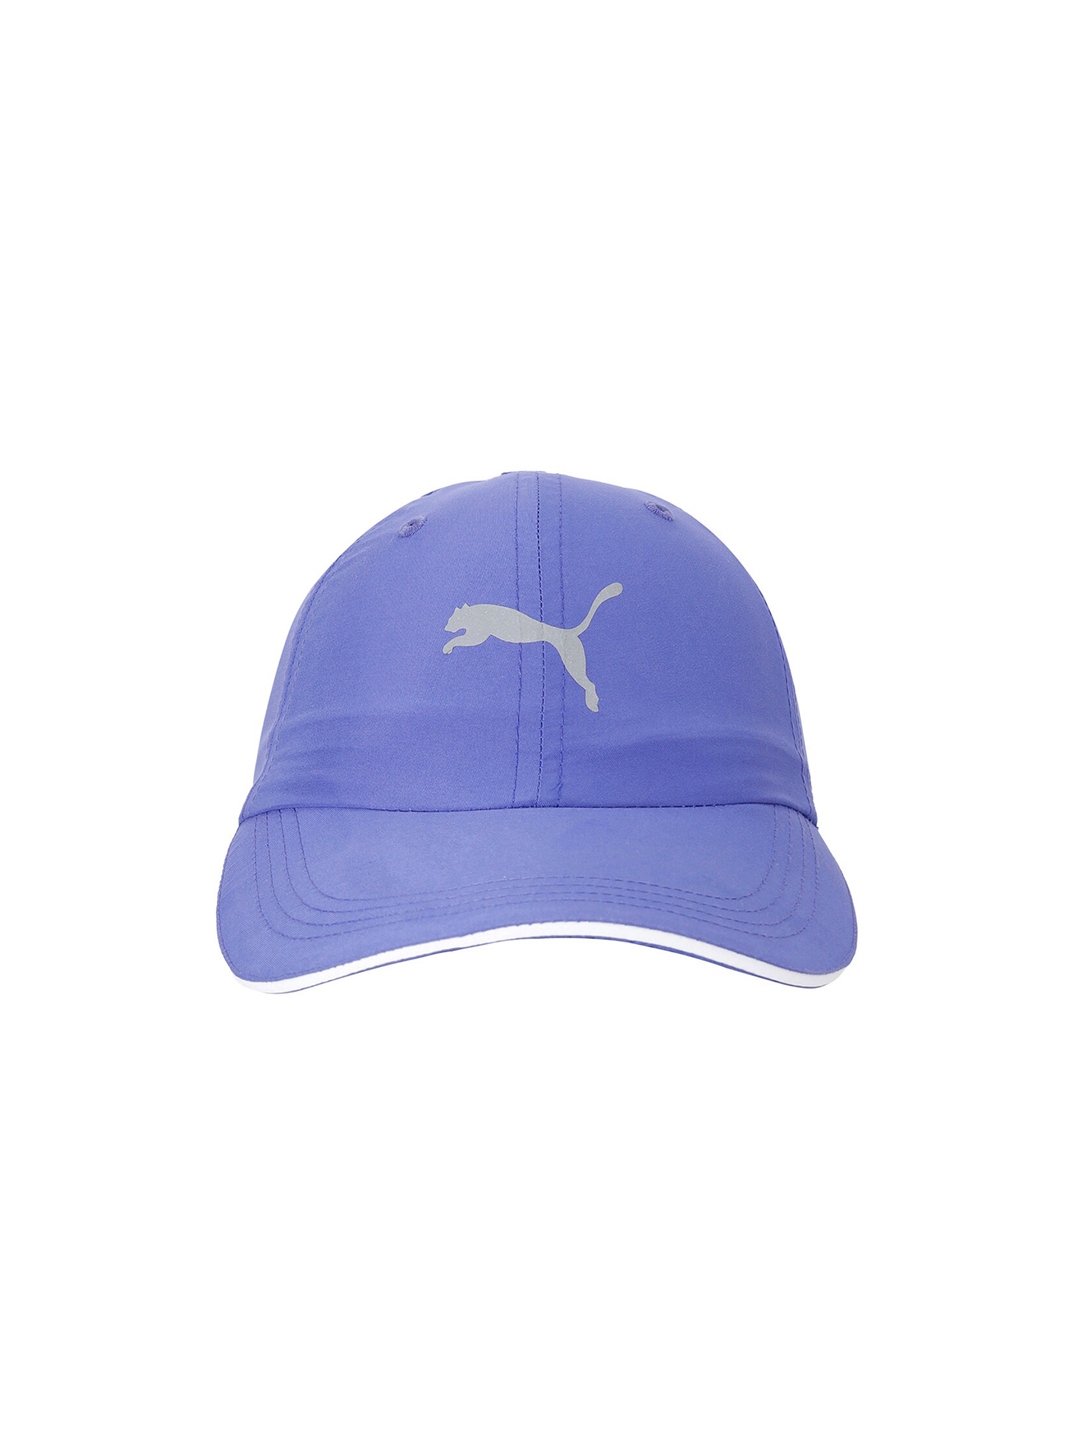 Puma Unisex Blue   Grey Solid Baseball Cap